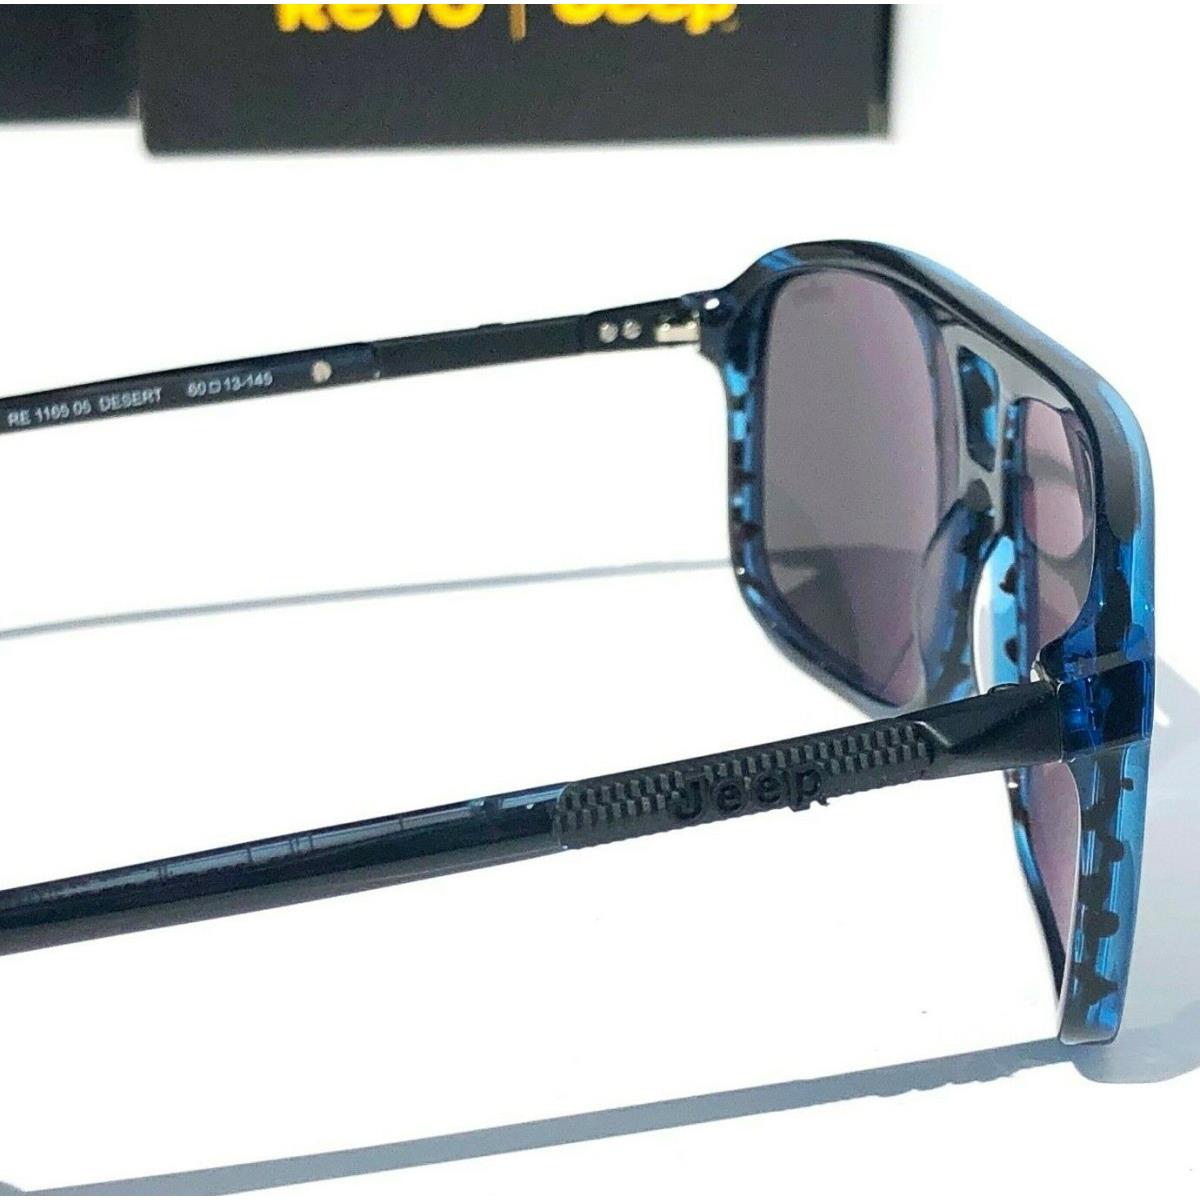 Revo sunglasses JEEP Desert - Blue Frame, Gray Lens